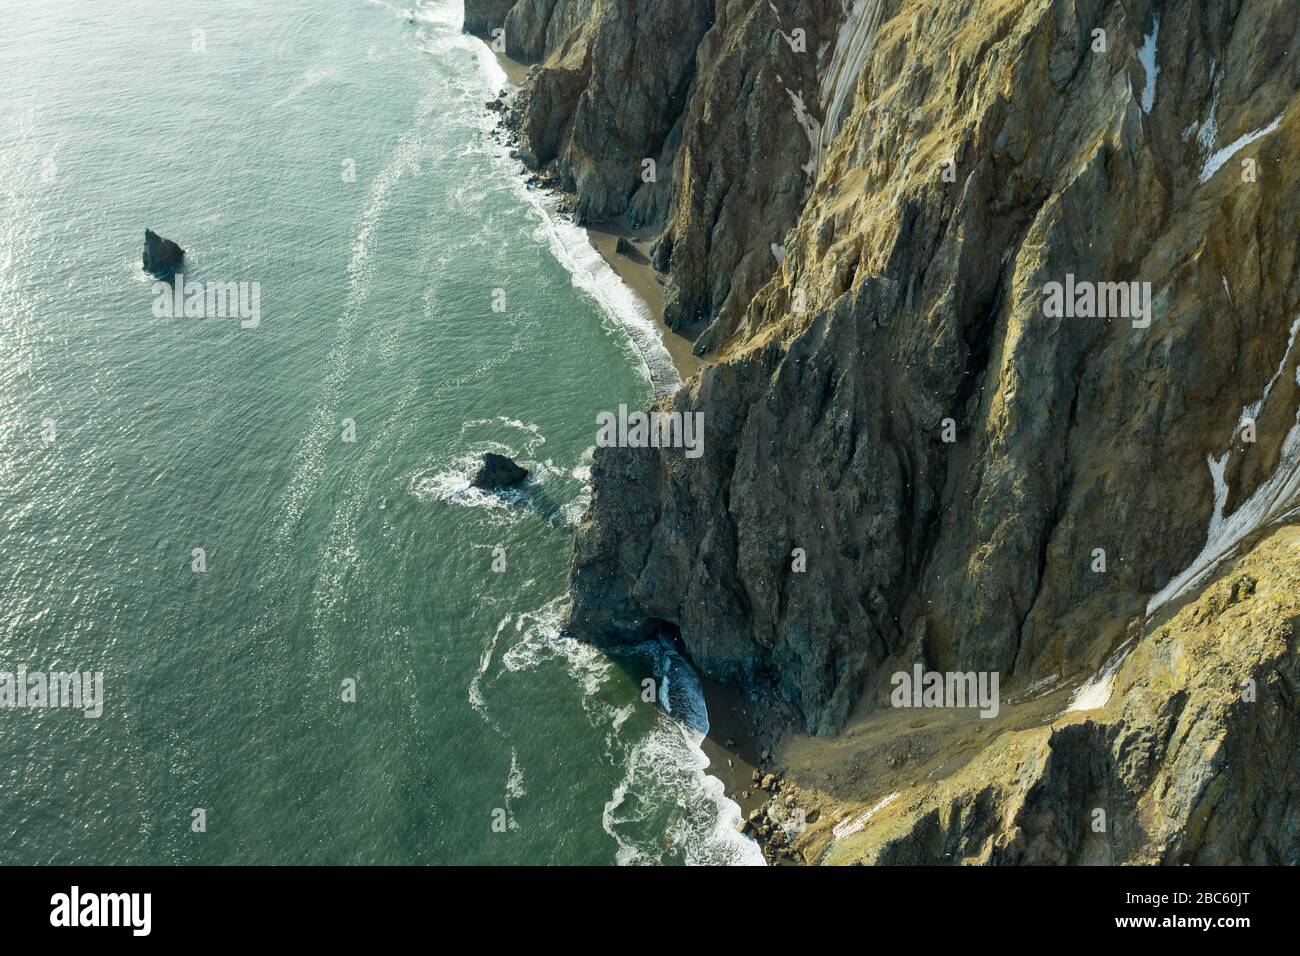 La vue de dessus sur la côte rocheuse nord-ouest de la mer de Béring, la région de Chukchi. Prise de vue depuis le dessus de la drone. Banque D'Images